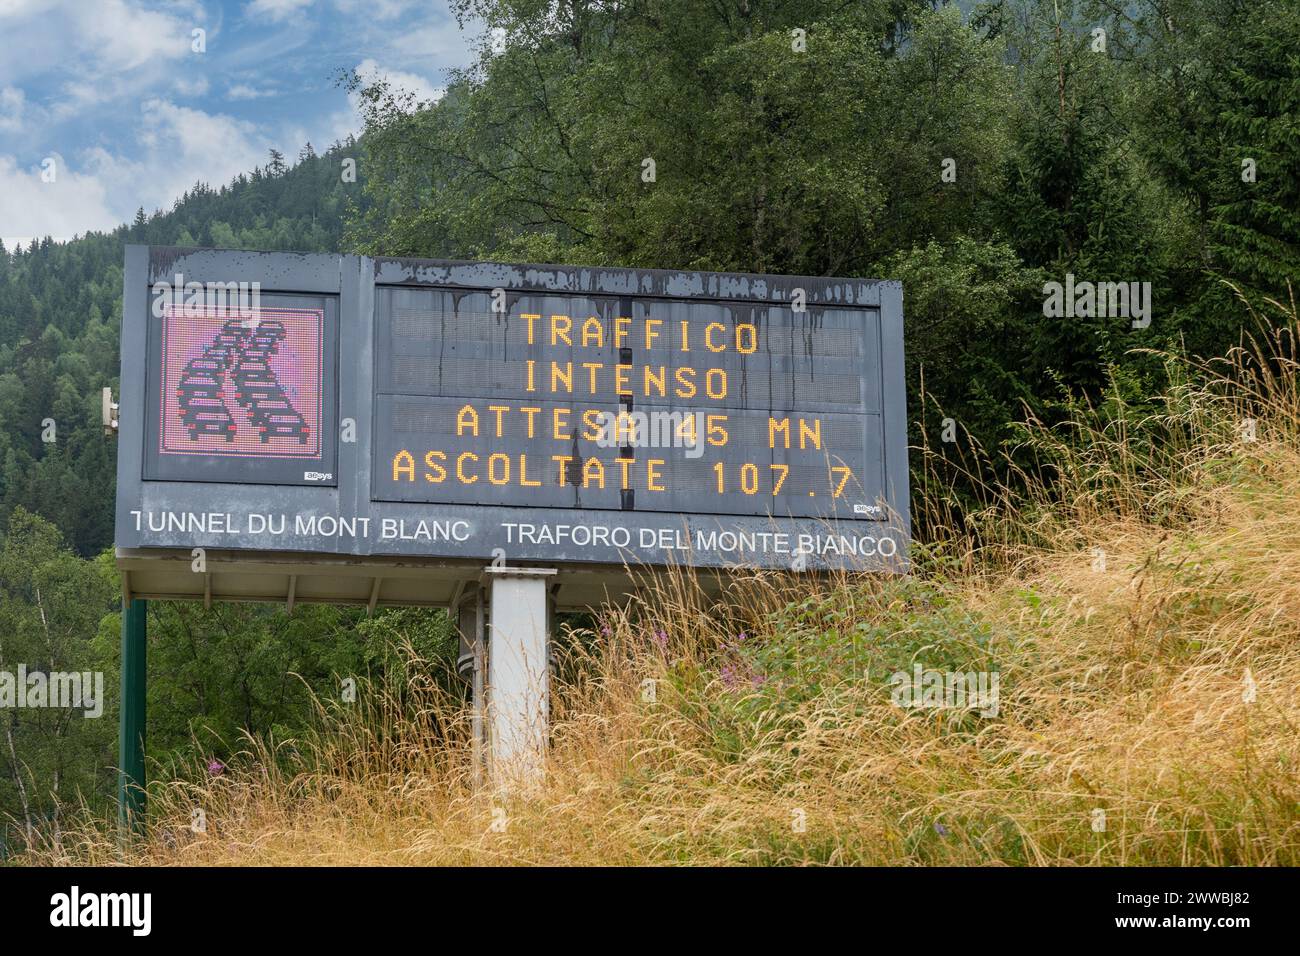 Panneau électronique indiquant le temps d'attente pour l'entrée dans le tunnel du Mont Blanc, à la frontière entre la France et l'Italie, Chamonix, France Banque D'Images